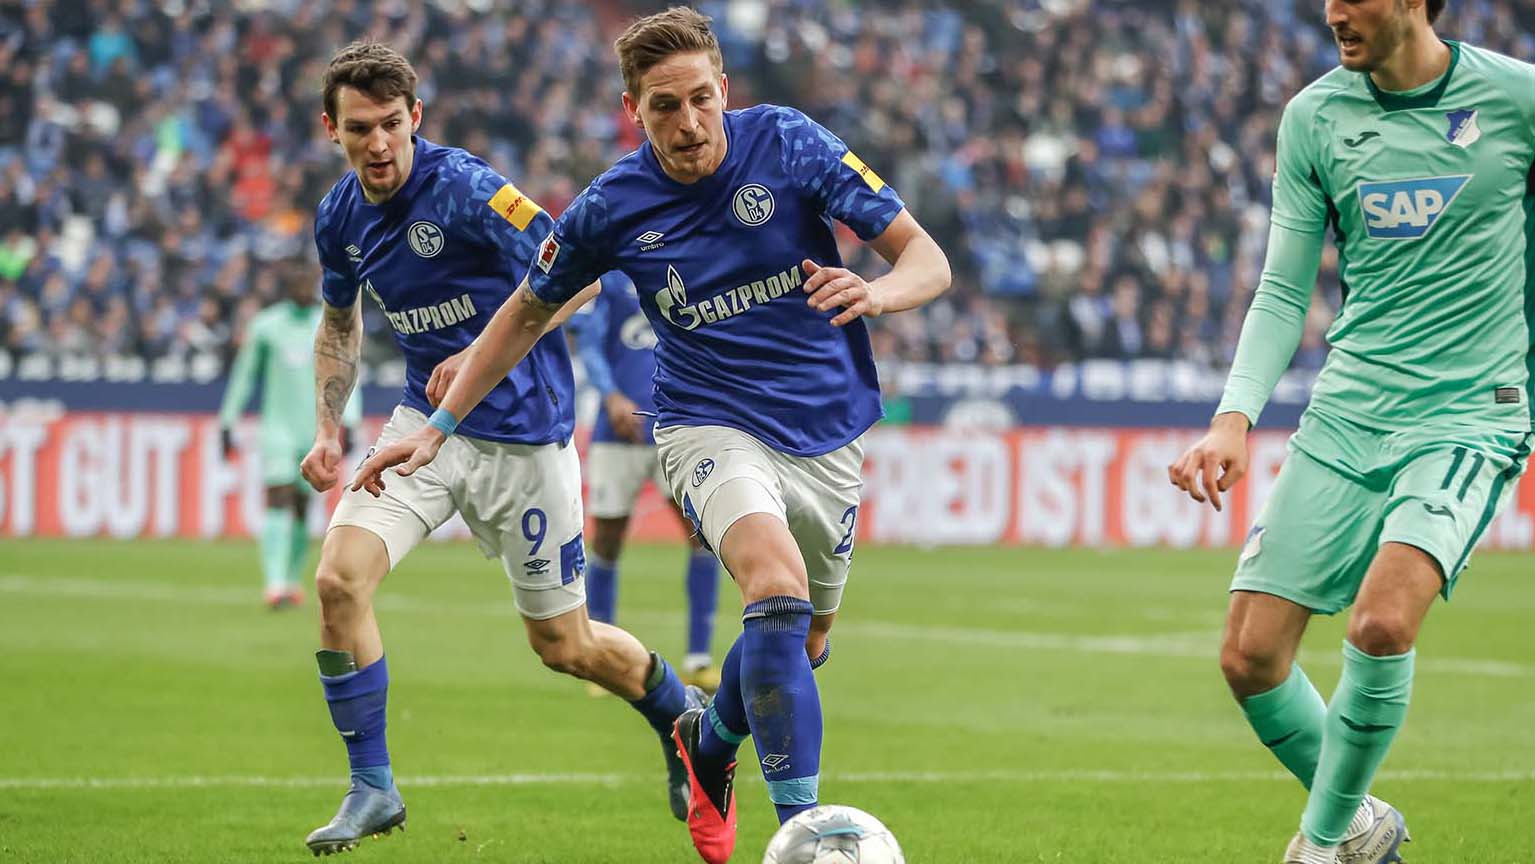 Hoffenheim vs Schalke – Nhận định kèo bóng đá 20h30 08/05/2021 – VĐQG Đức